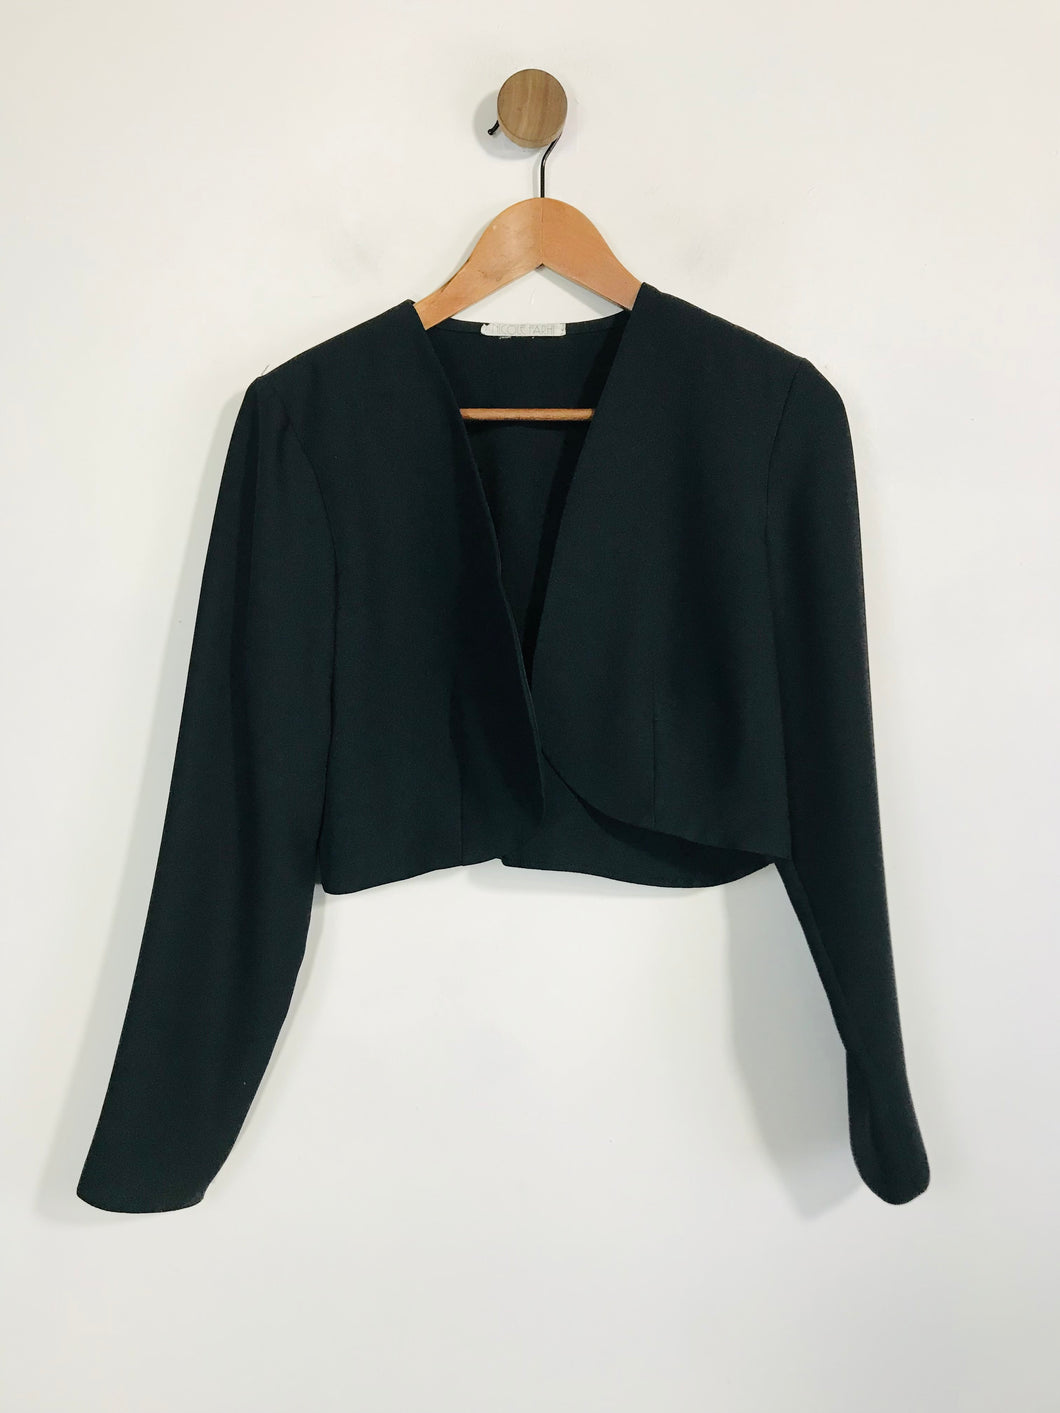 Nicole Farhi Women's Crop Smart Blazer Jacket | M UK10-12 | Black